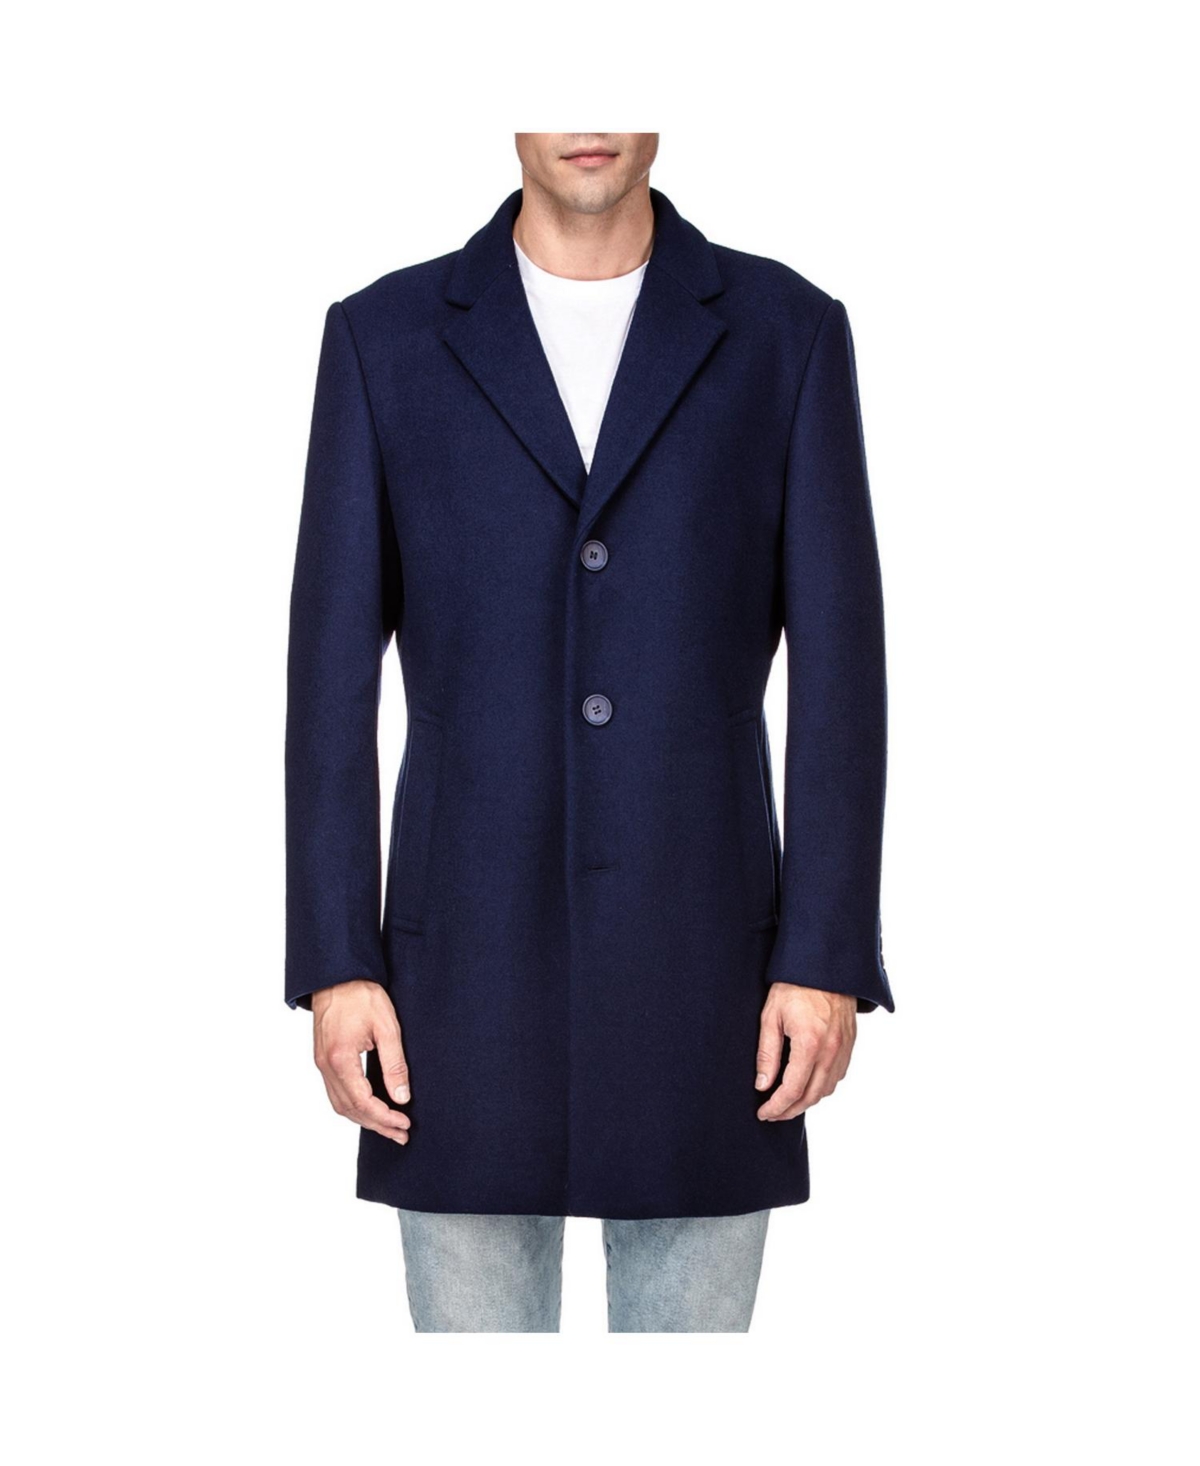 Men's Tailored Wool Blend Notch Collar Wool Blend Walker Car Coat - Light grey